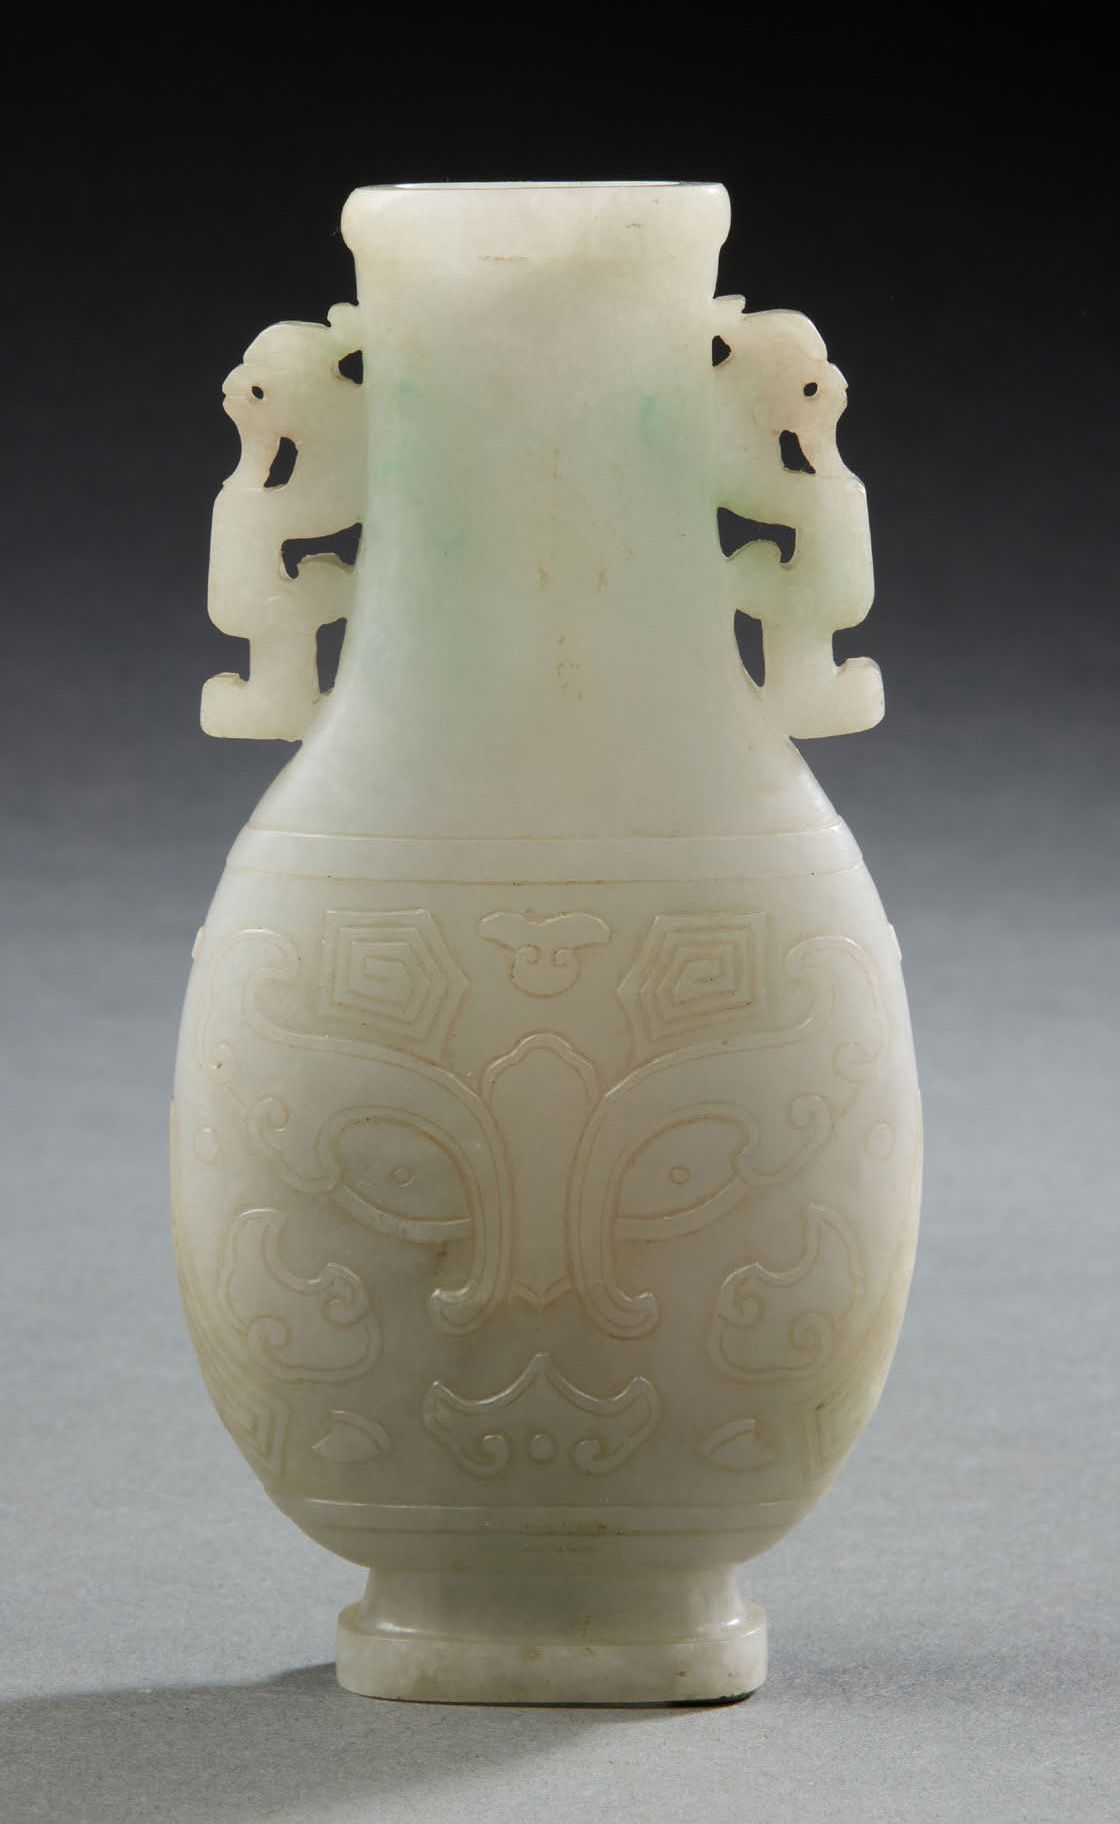 CHINE, vers 1900 一件略带绿色浸润的翡翠柱形花瓶，有两面饕餮面具装饰。颈部饰有两条风格化的龙。
H.12,5 cm